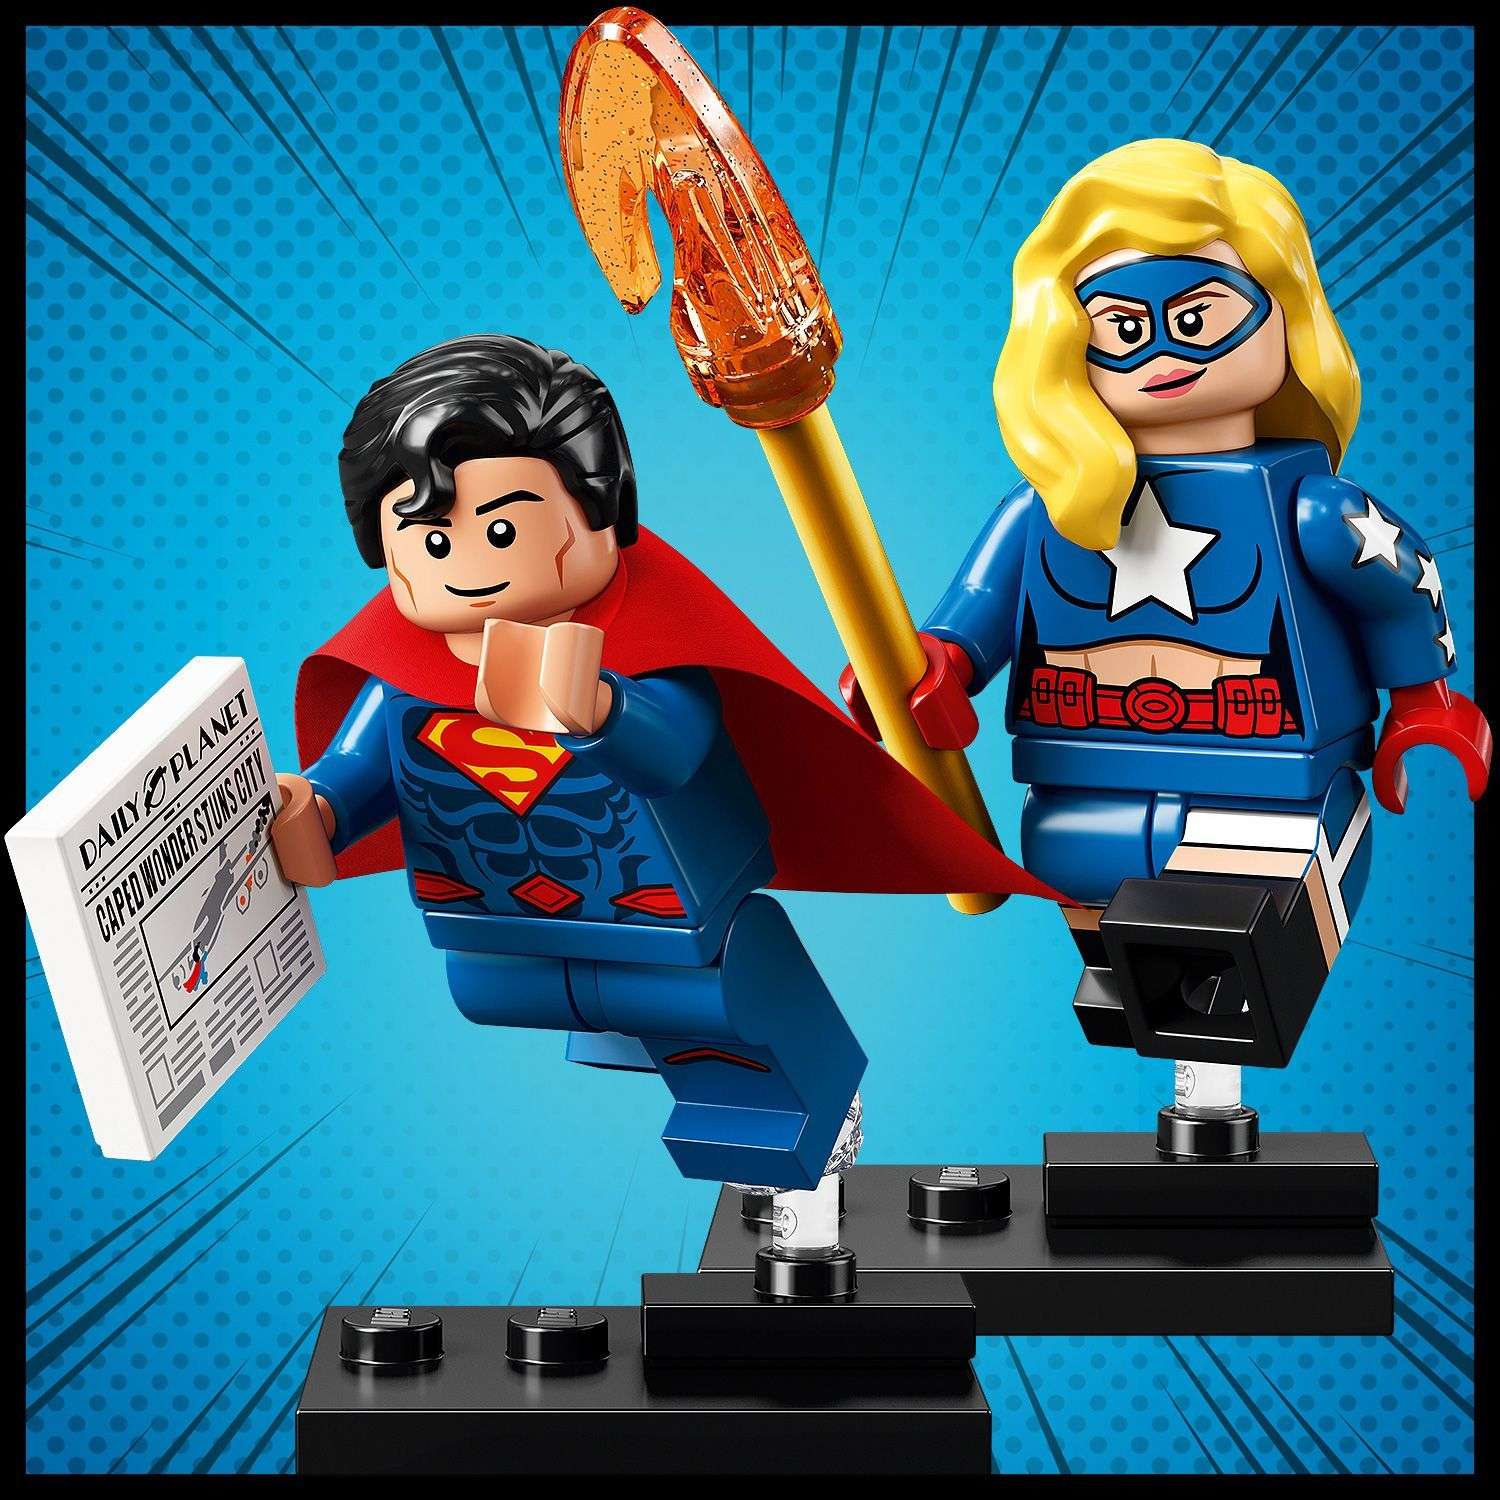 Конструктор LEGO Minifigures DC Super Heroes Series 71026 - фото 8